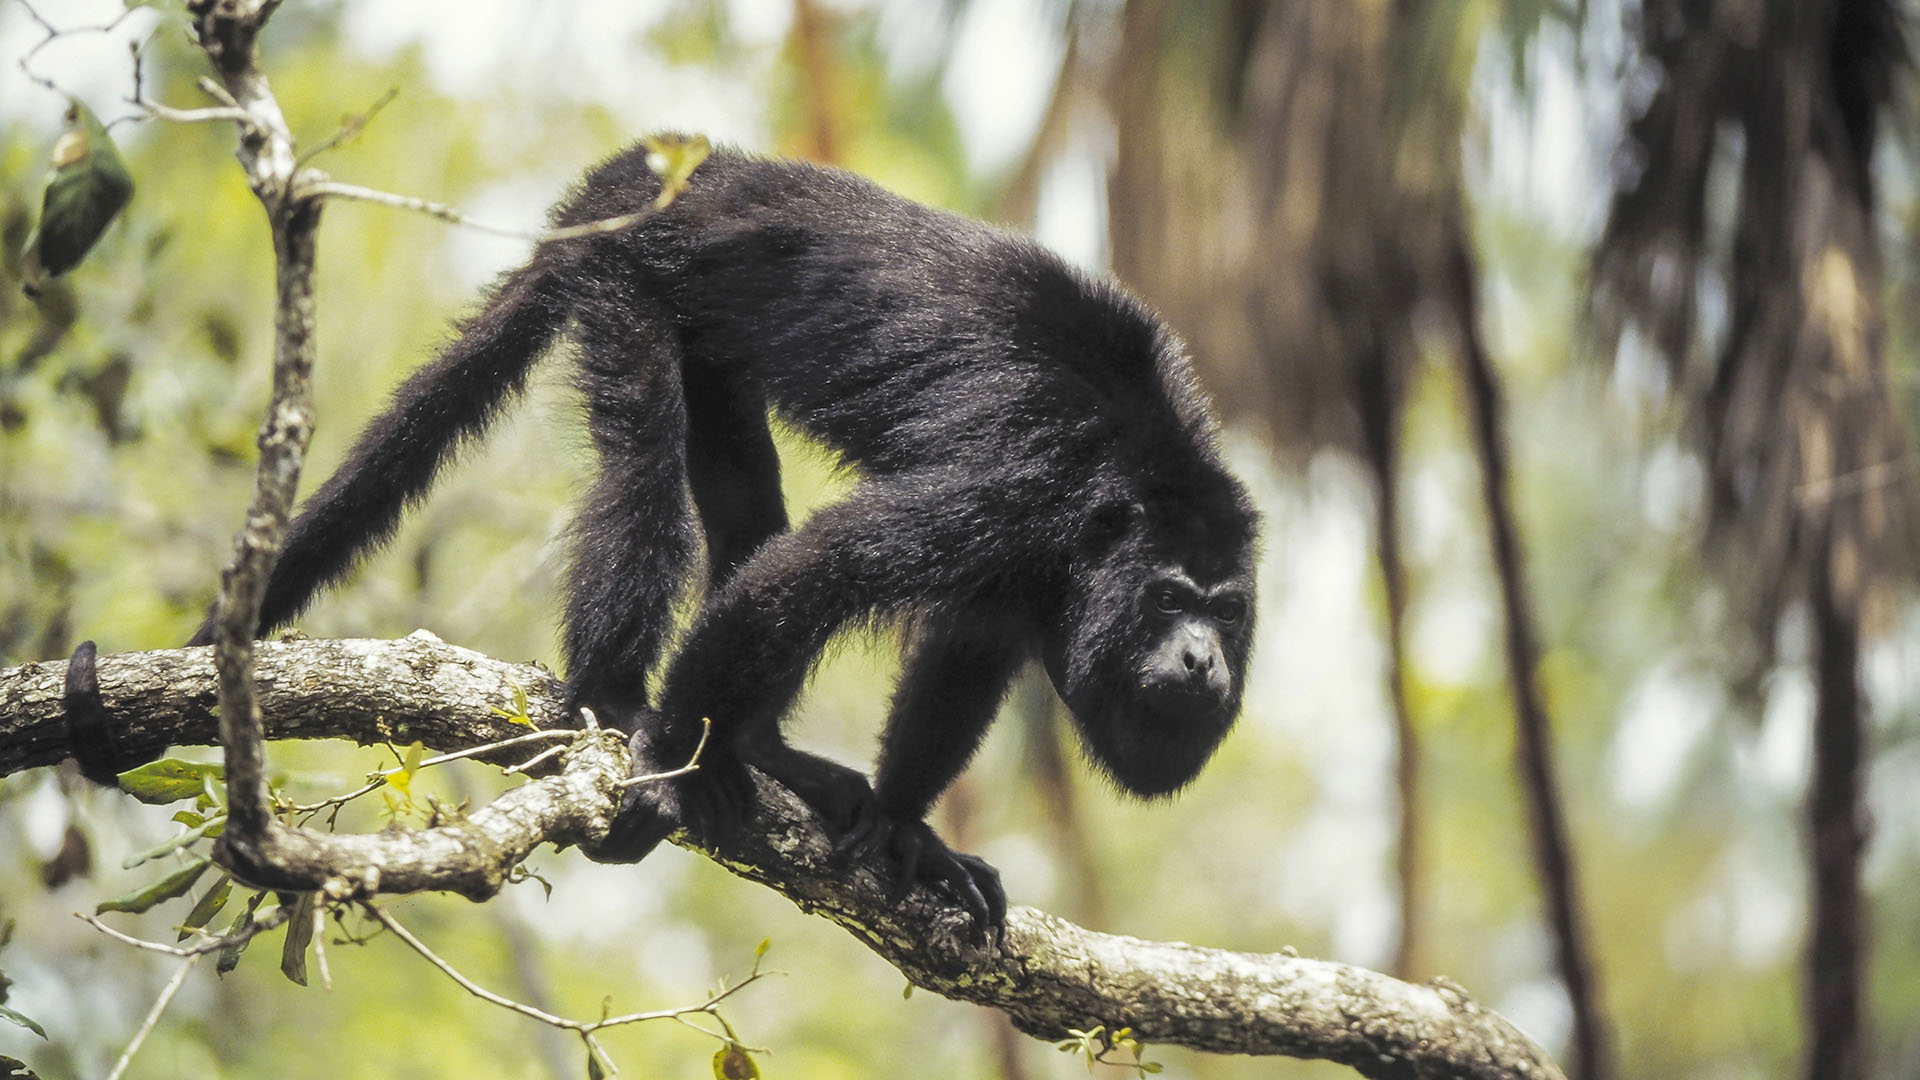 Los monos carayá son considerados “centinelas de la salud pública”, porque al ser muy susceptibles a la fiebre amarilla, su estado de salud alerta a las poblaciones cercanas sobre el virus (Getty)